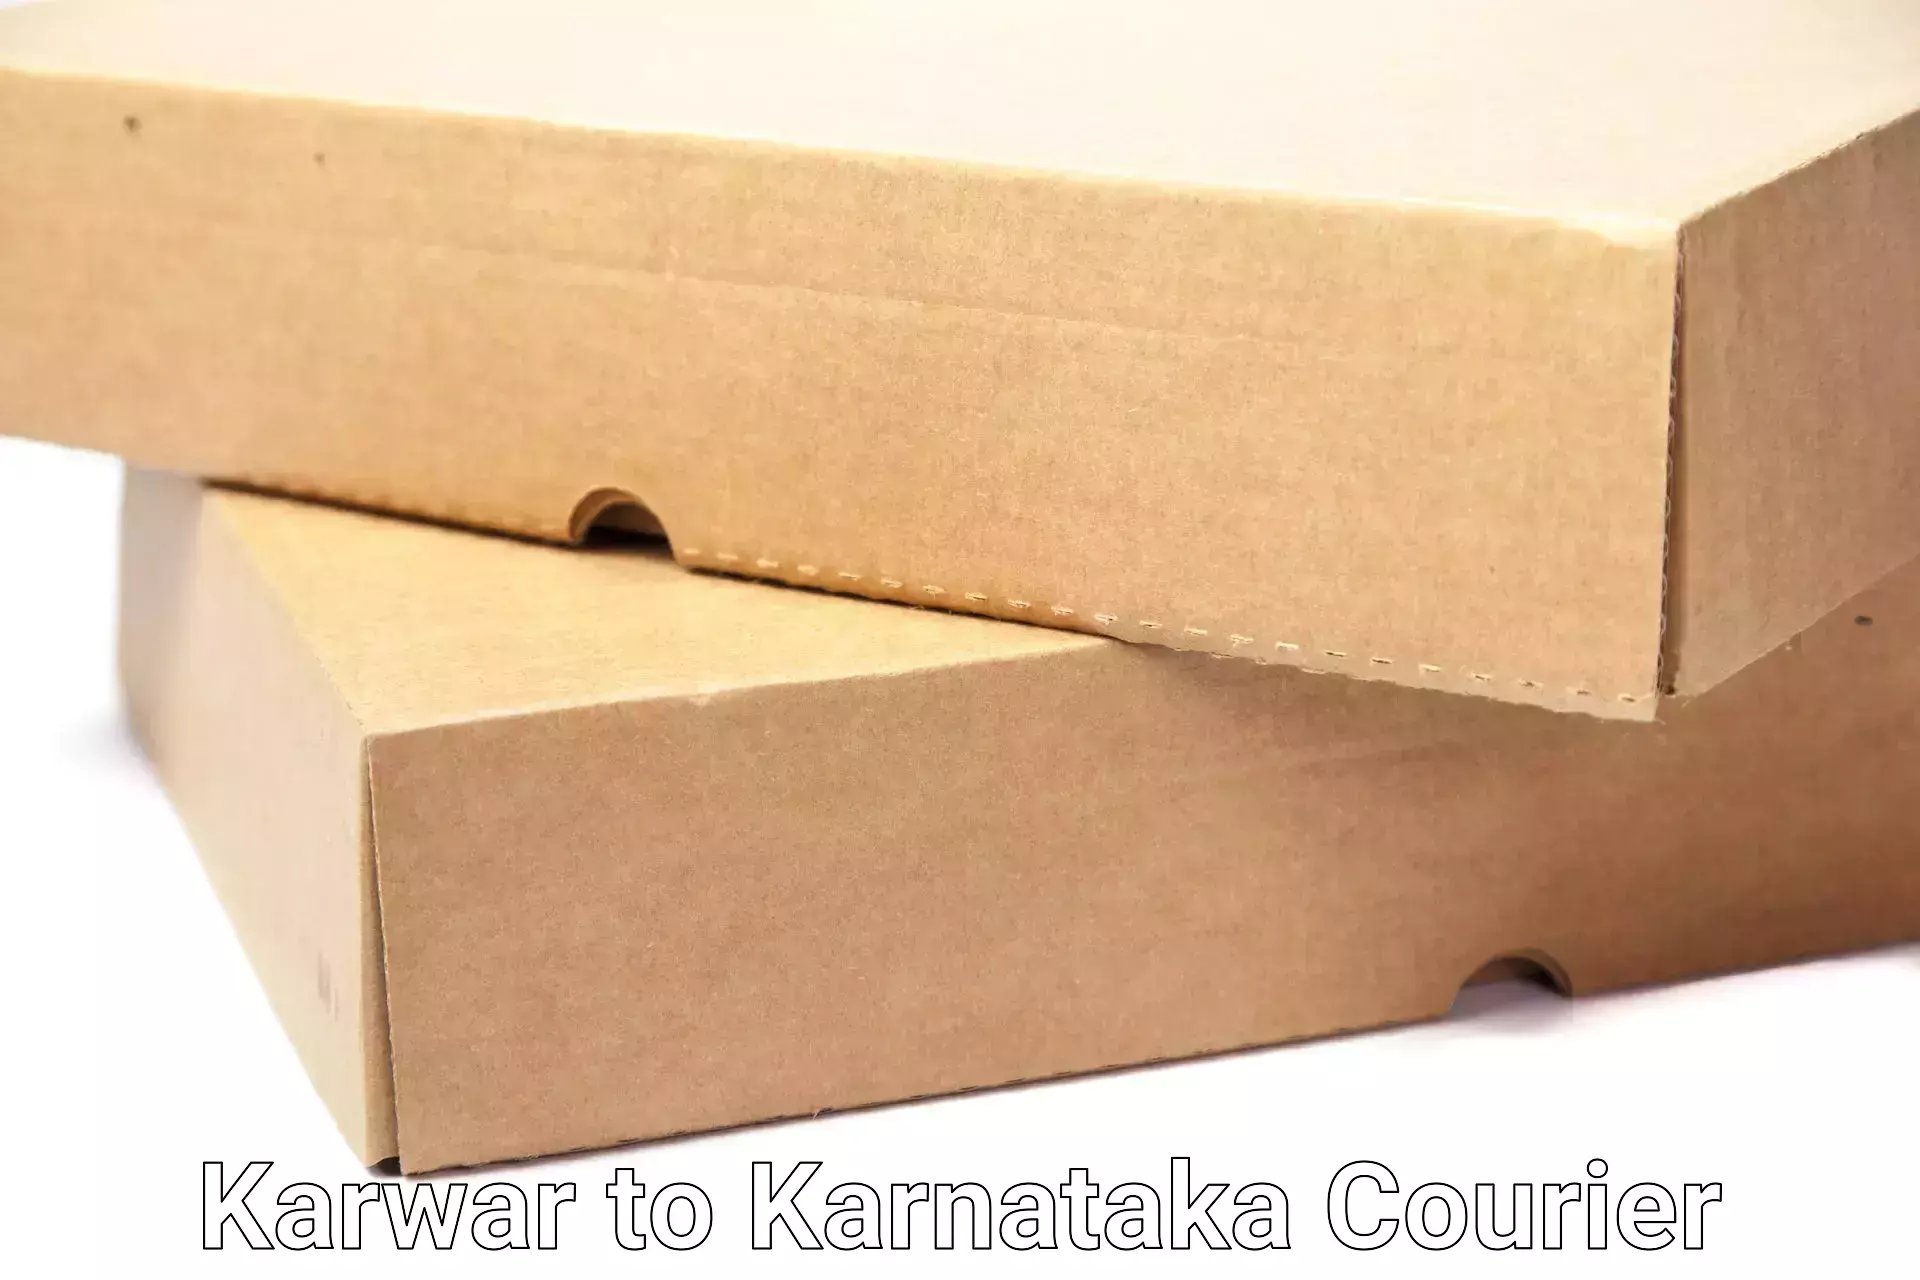 Quality relocation assistance Karwar to Karnataka